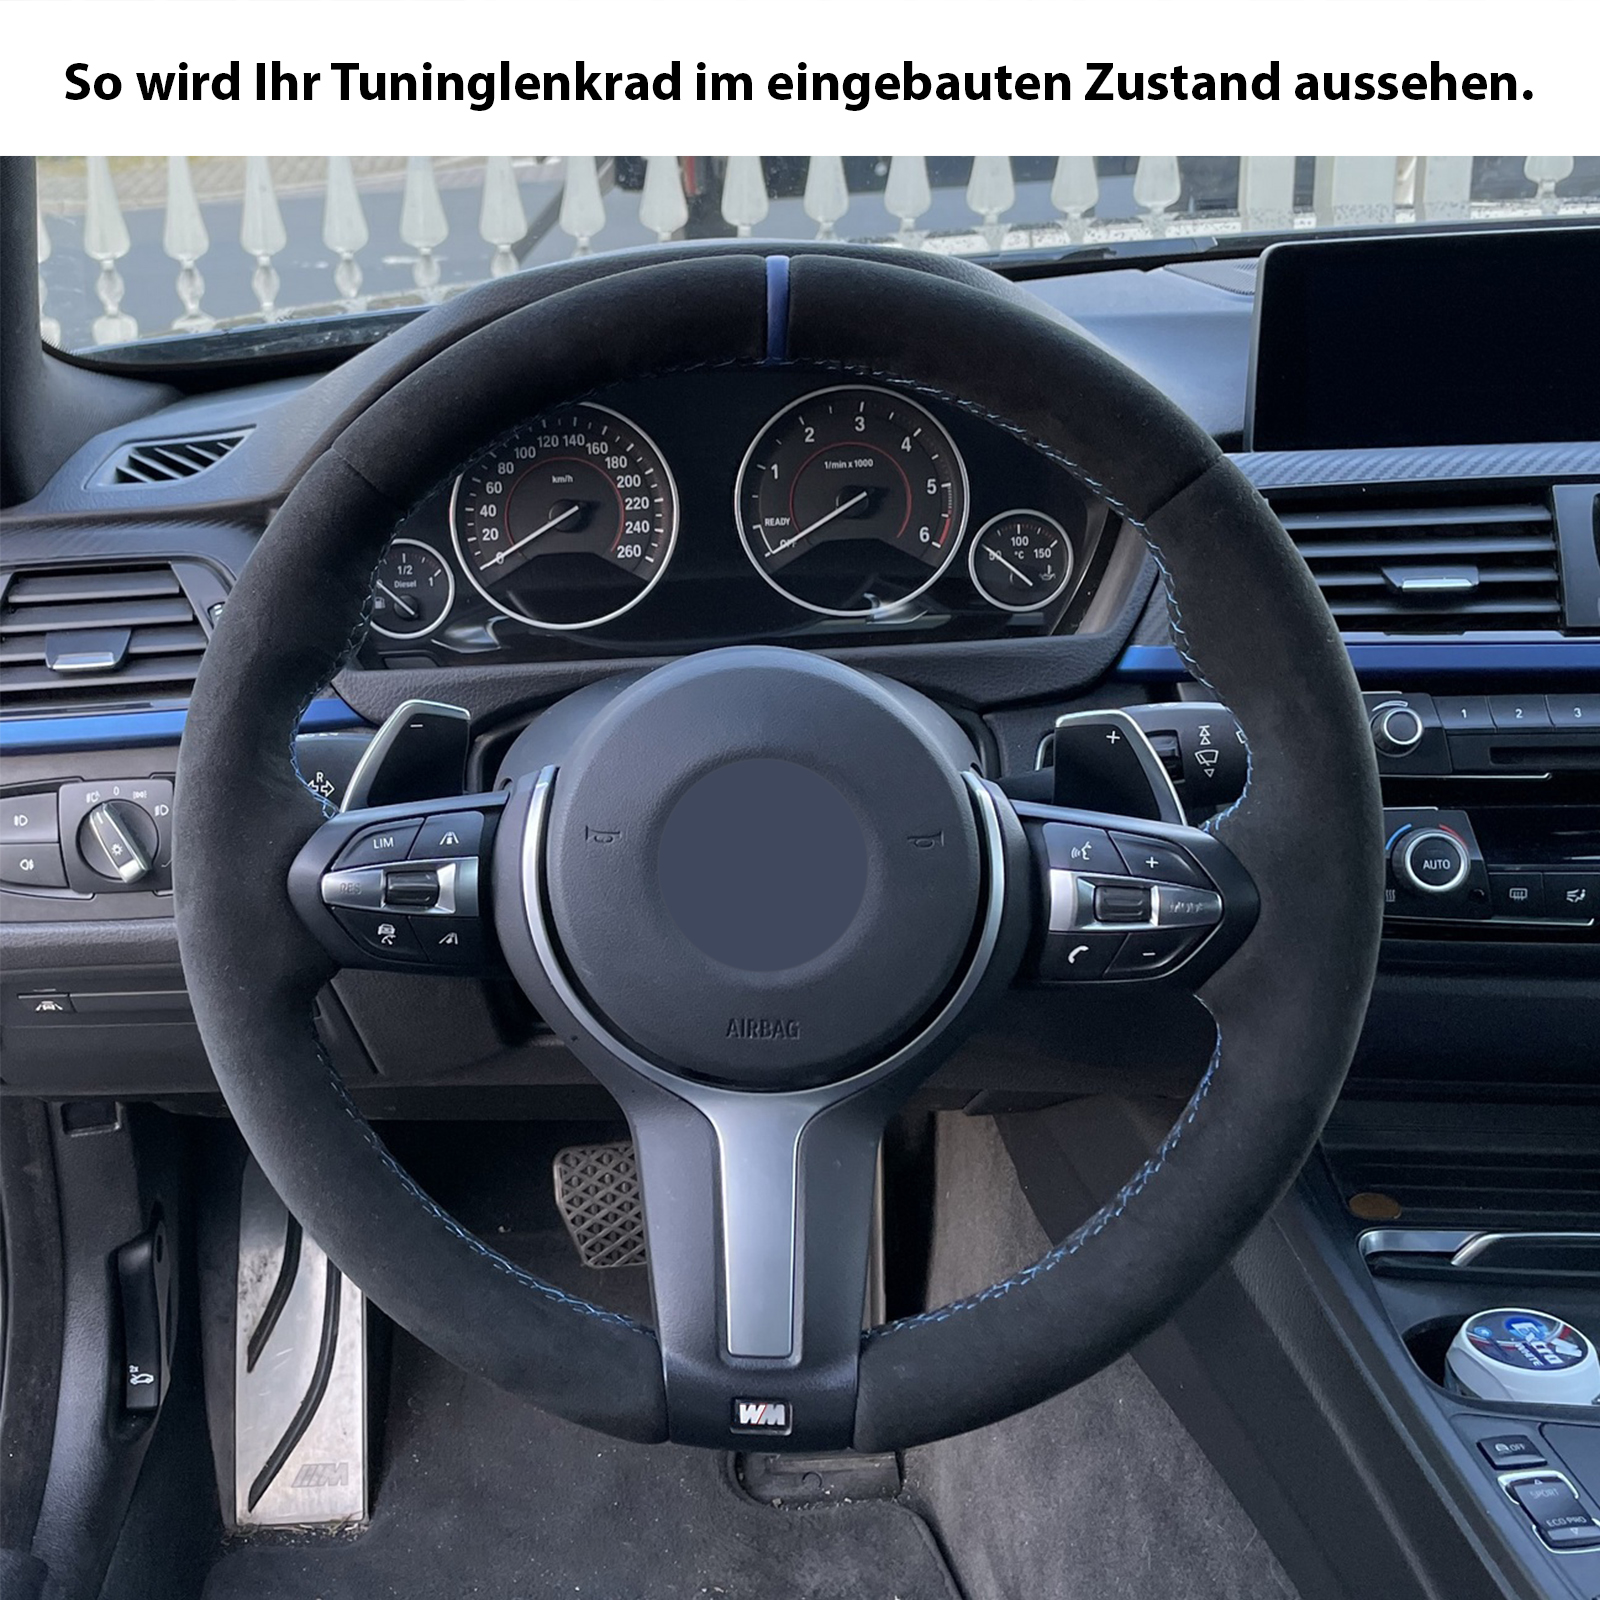 Alfanxi Handstich Alcantara Lenkradbezug Kompatibel mit BMW M Sport F20 F21  F22 F23 F30 F31 F32 F33 F34 F36 (Keine Streifen)